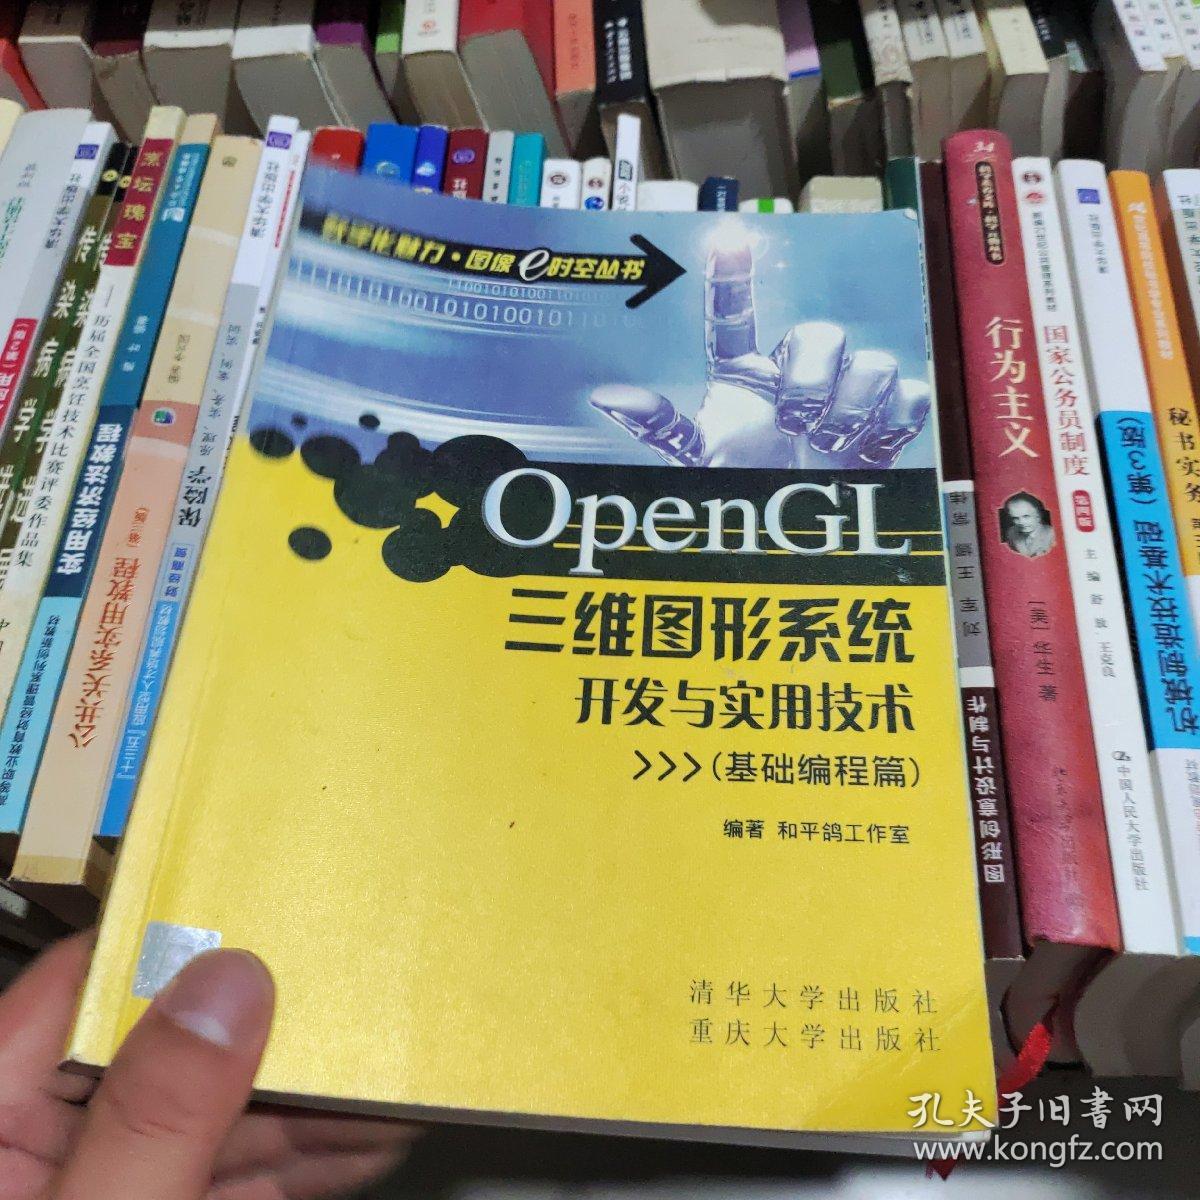 OpenGL三维图形系统开发与实用技术（基础编程篇）